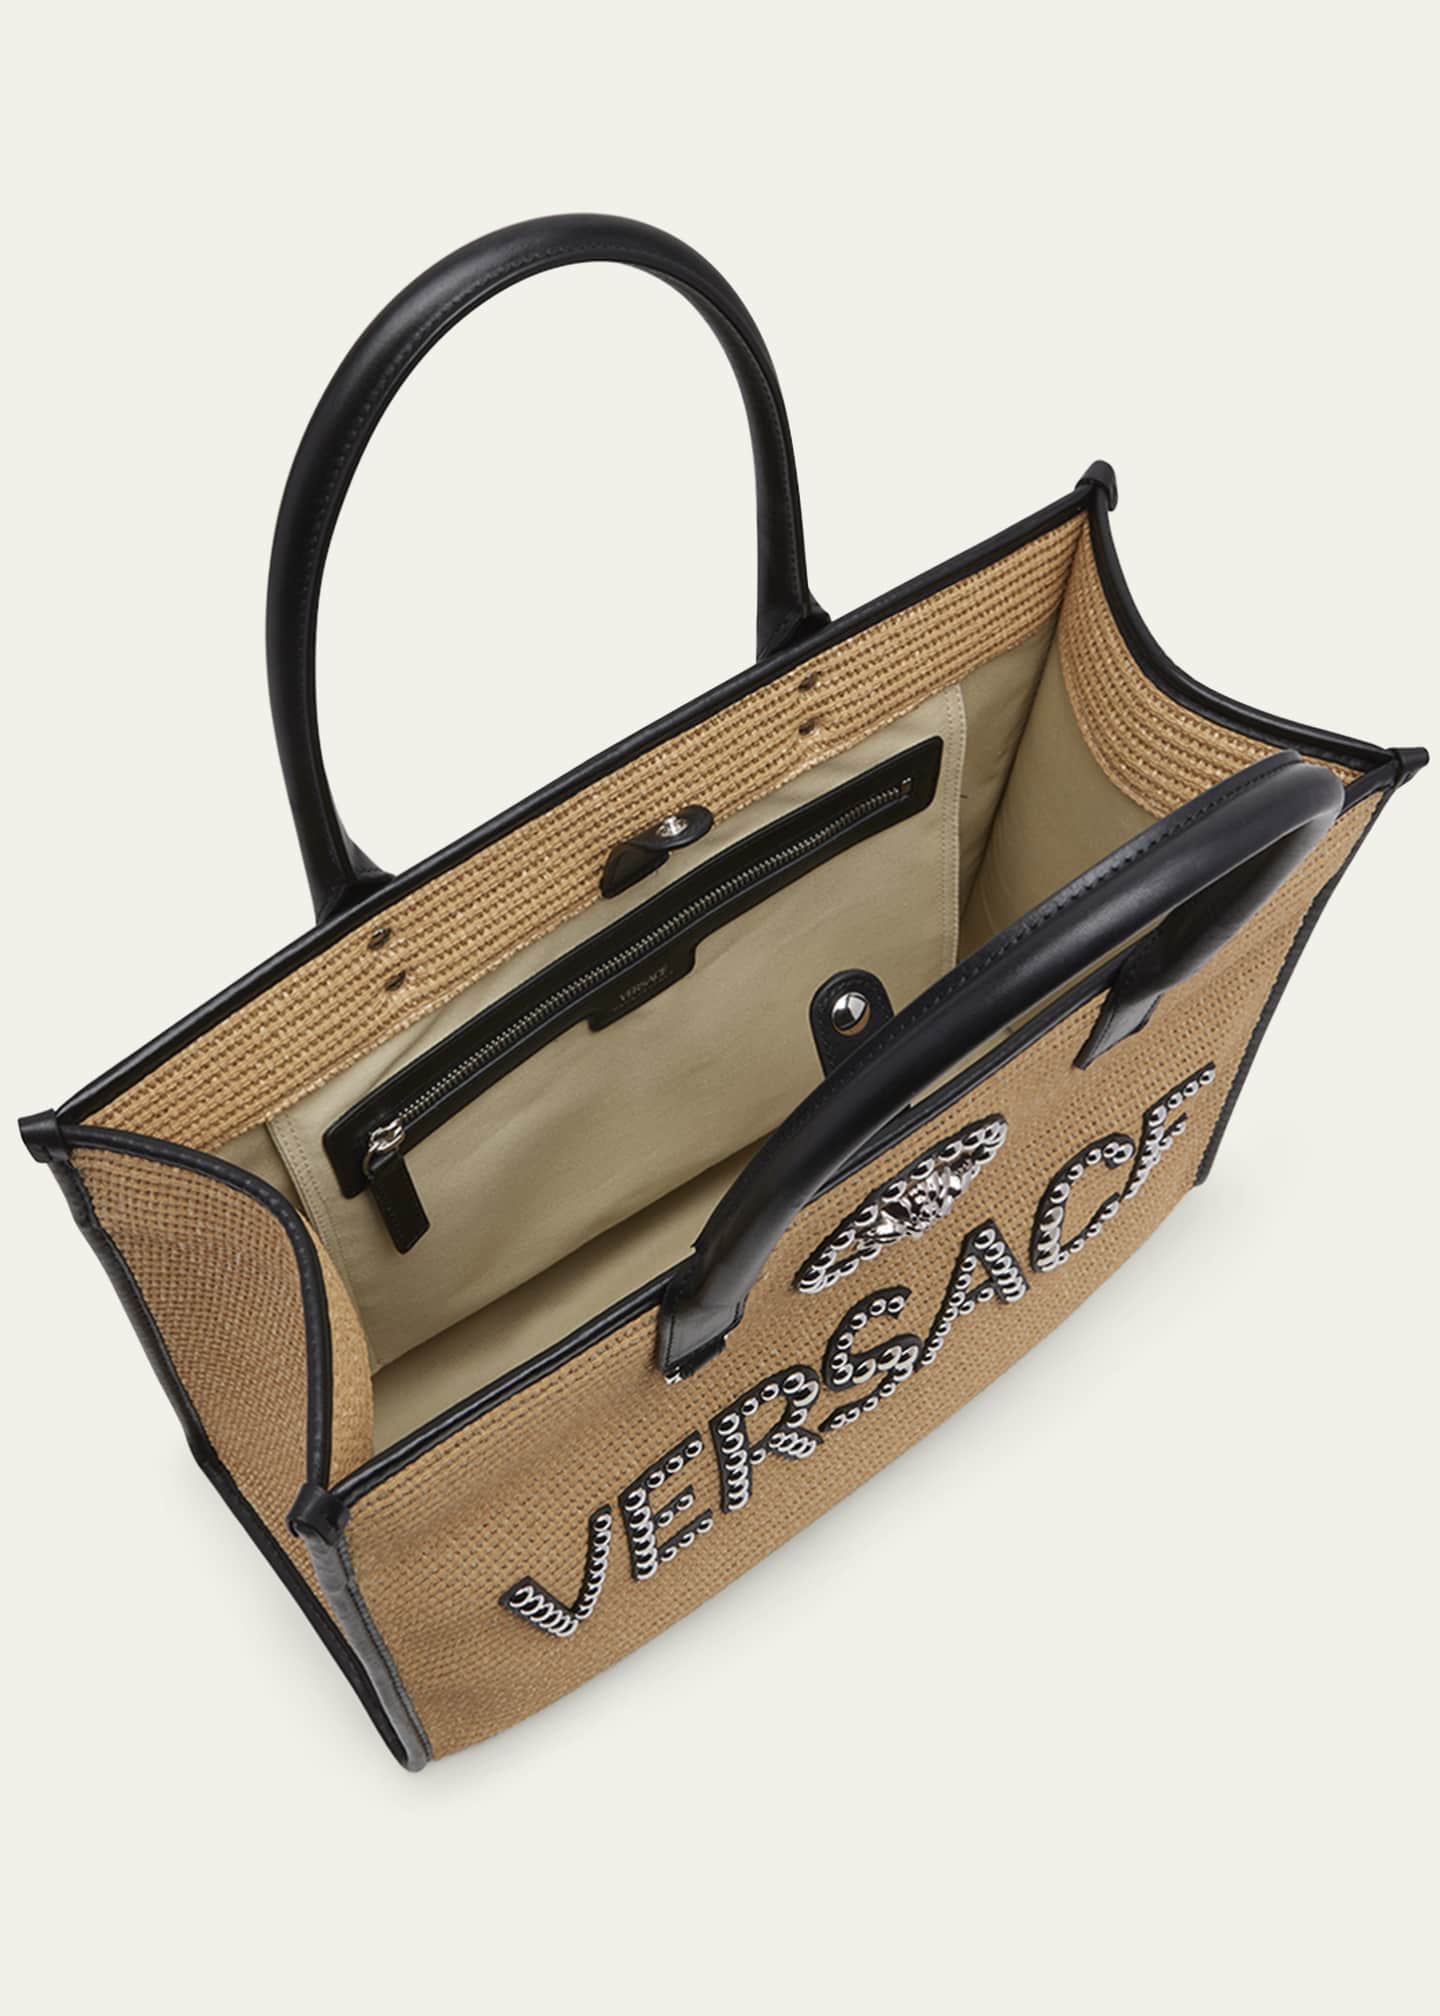 Versace Large La Medusa Embellished Tote Bag - Farfetch